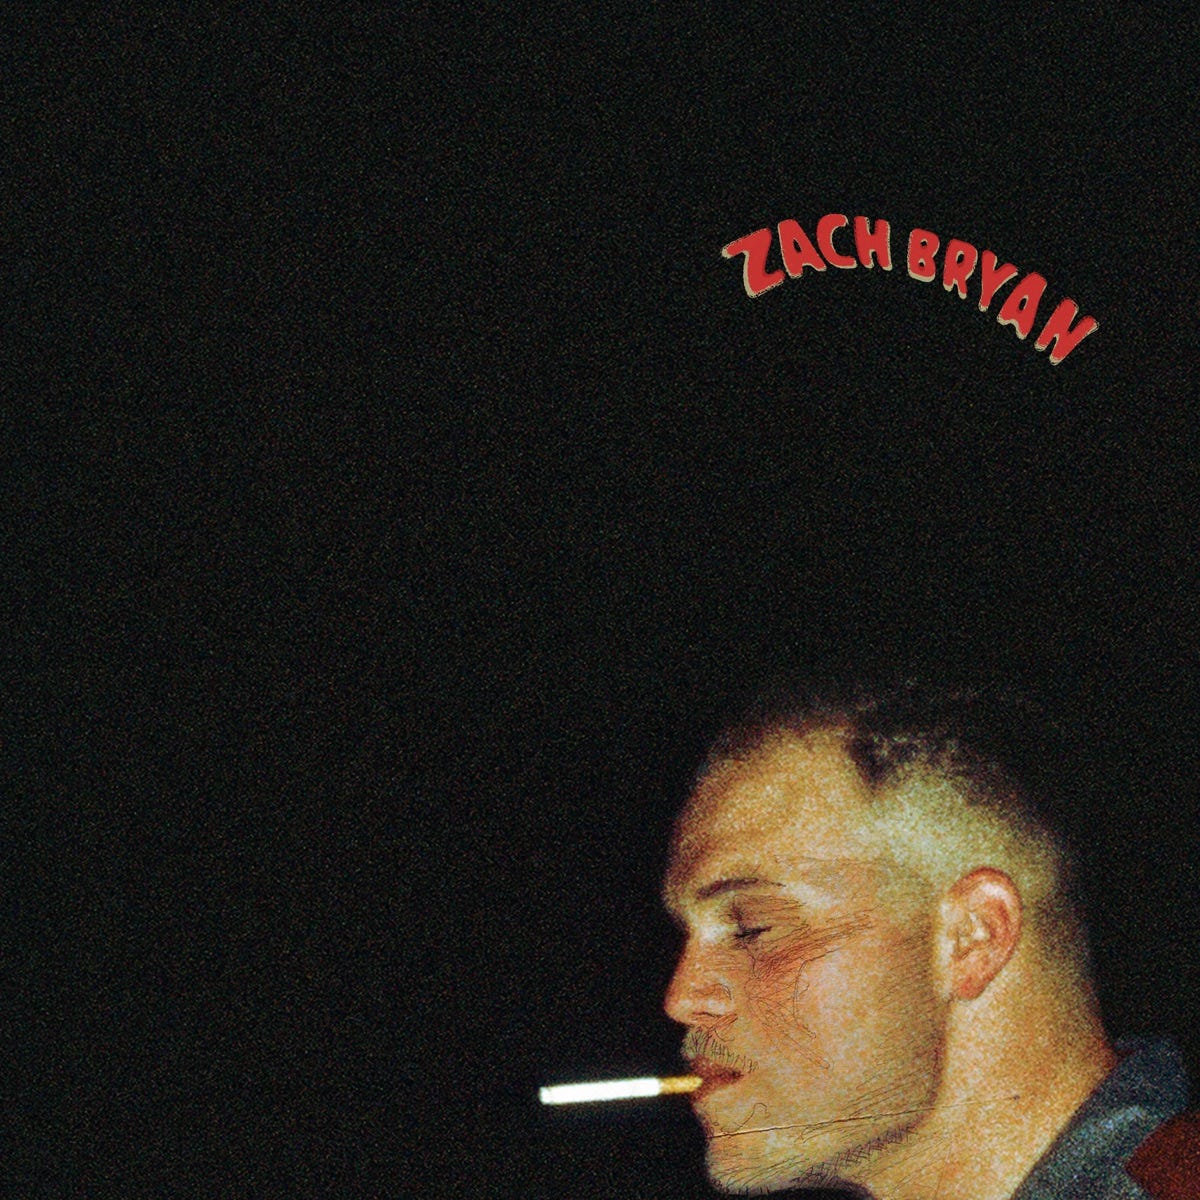 Zach Bryan - Album by Zach Bryan - Apple Music